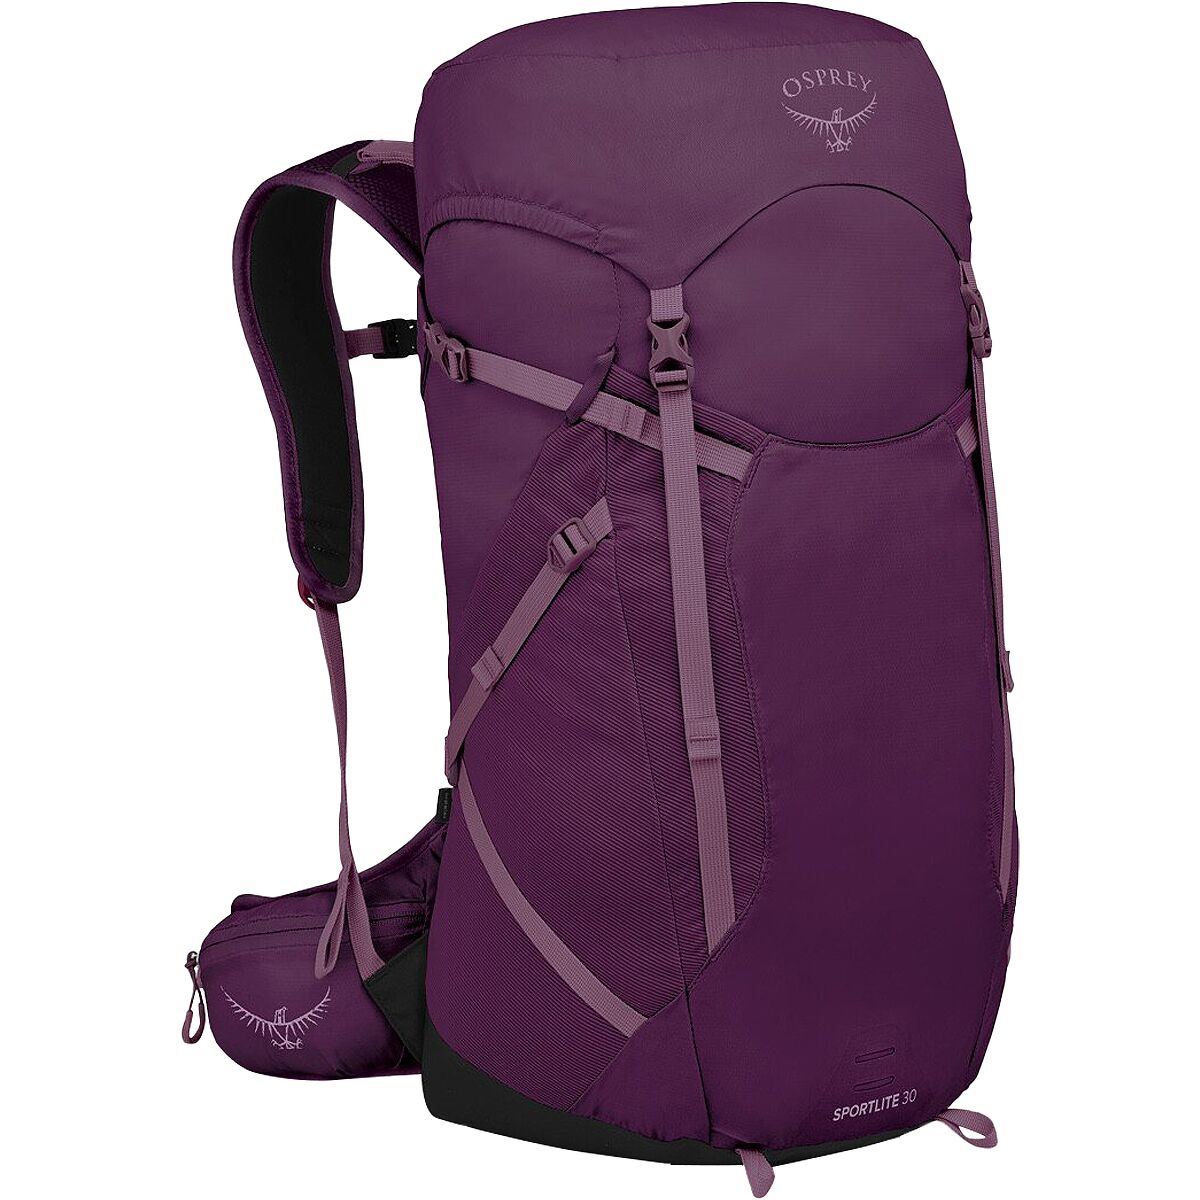 Osprey Packs Sportlite 30L Backpack